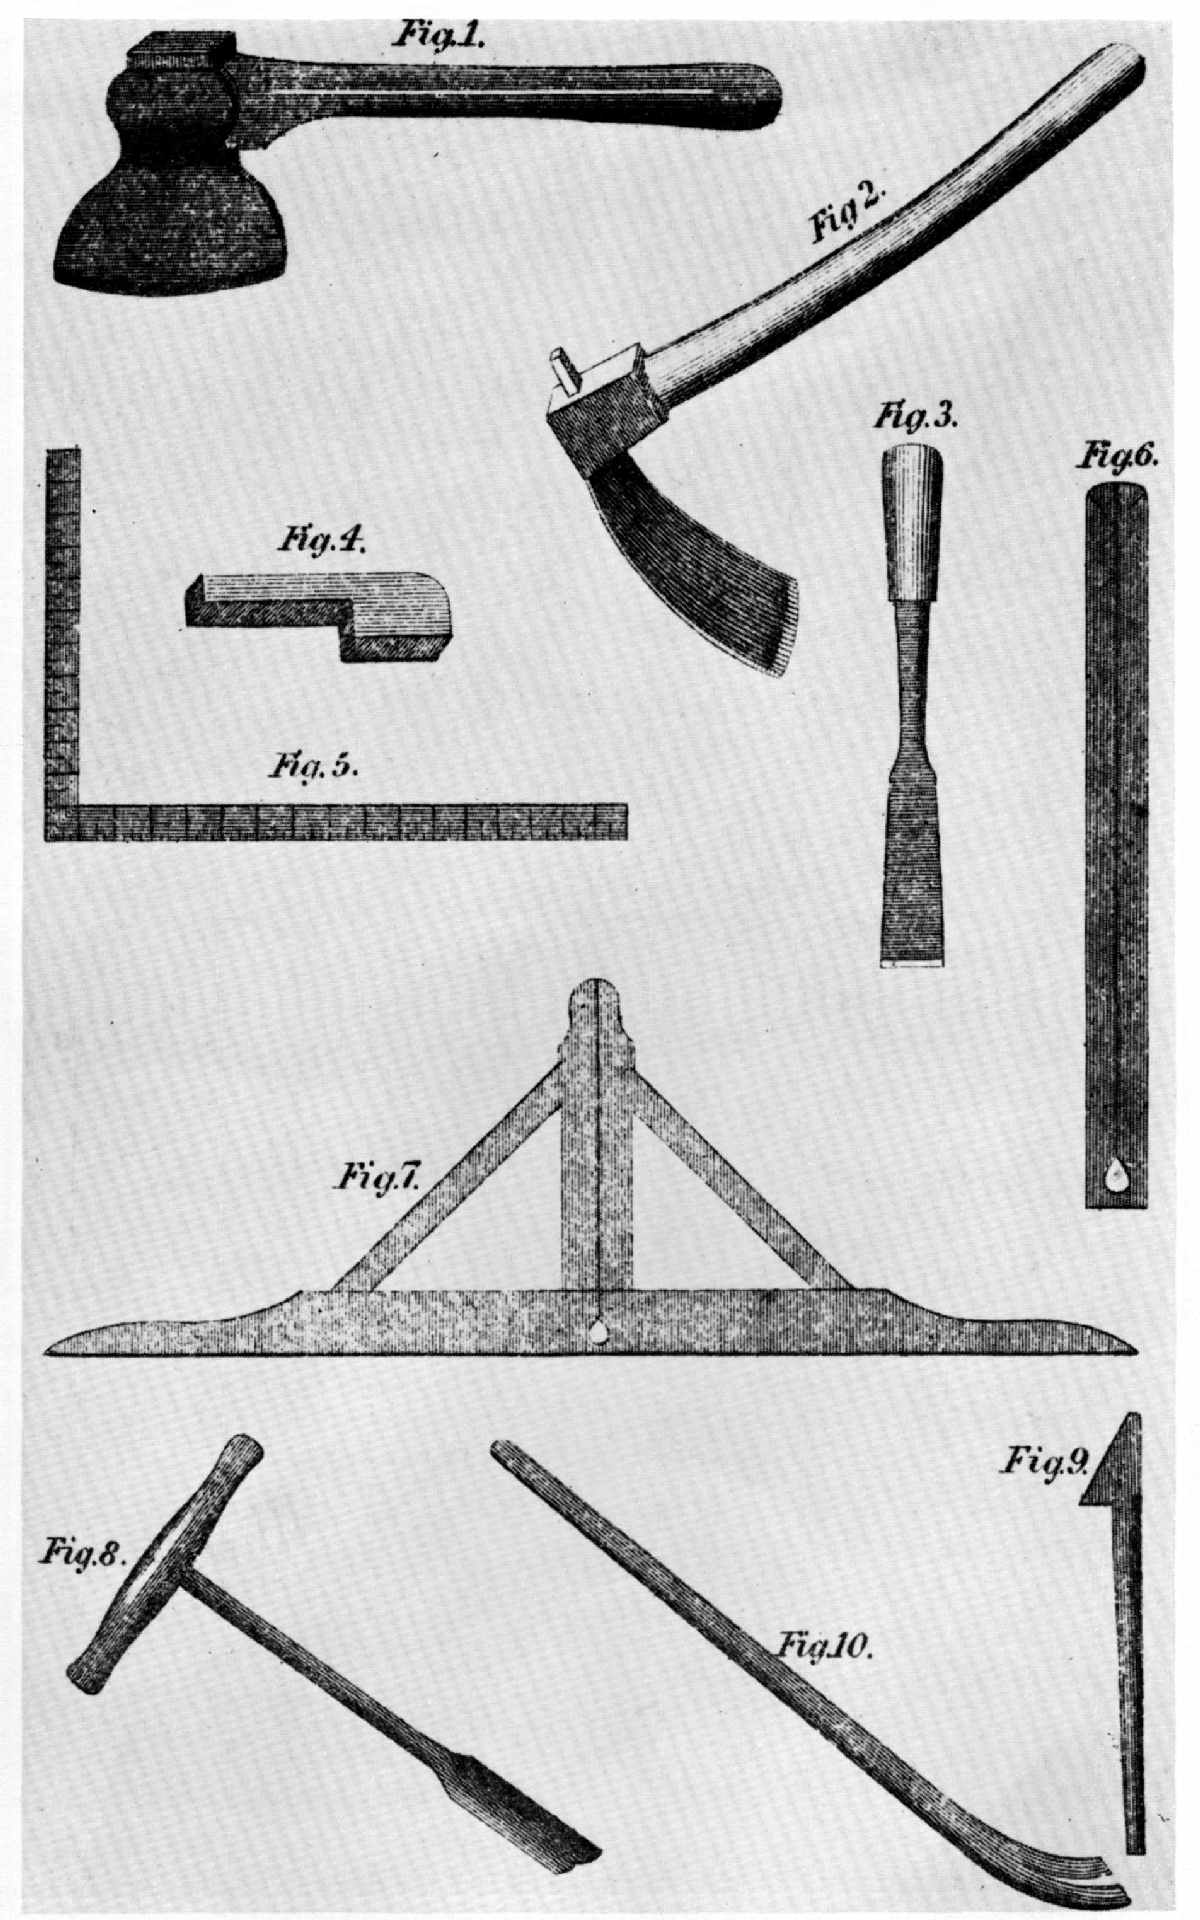 Old Carpenter Tools